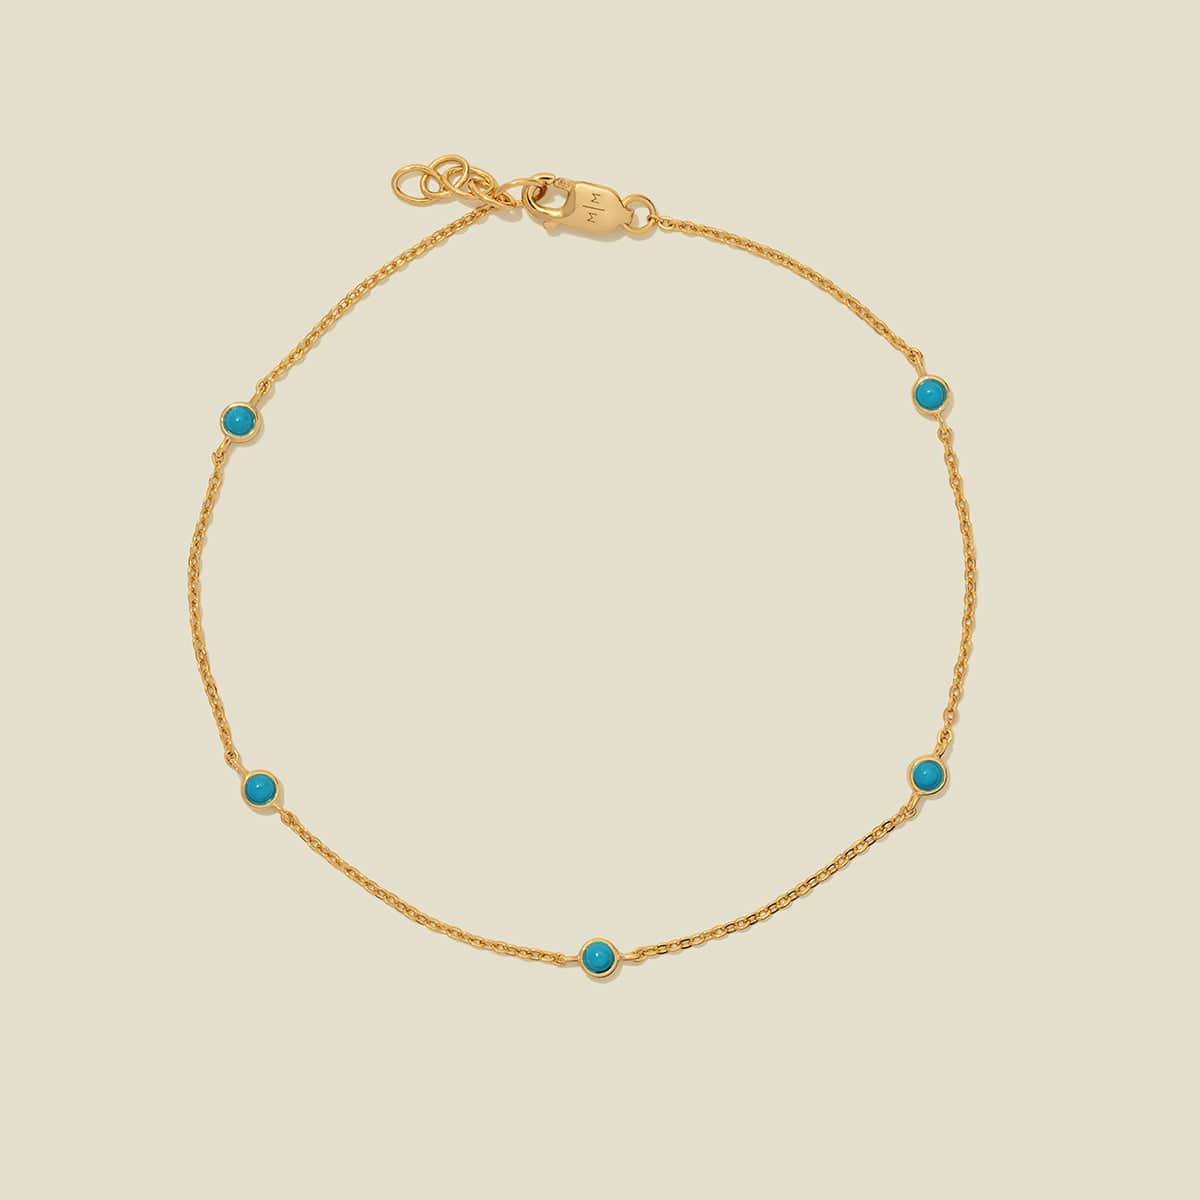 Floating Turquoise Bracelet Gold Vermeil / 6" Bracelet